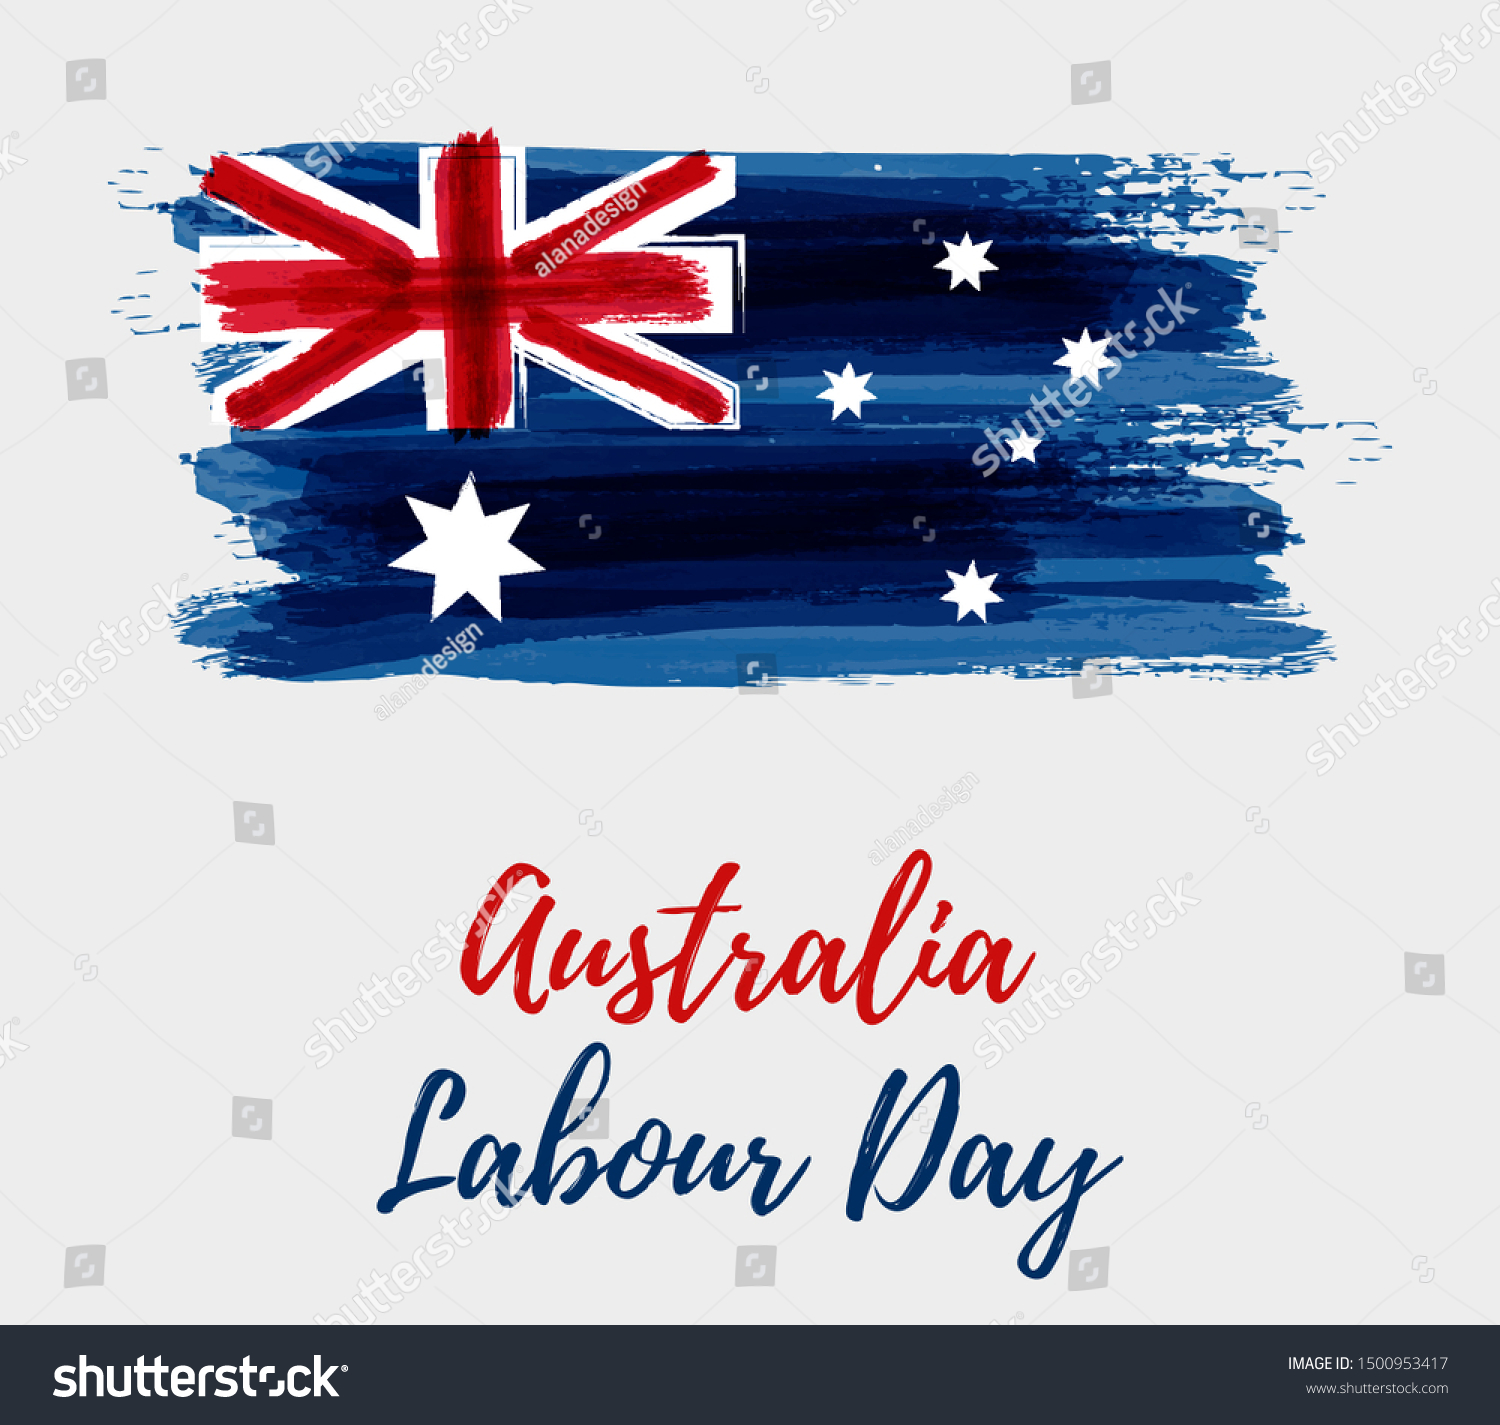 750 Labour Day Australia Images, Stock Photos & Vectors Shutterstock